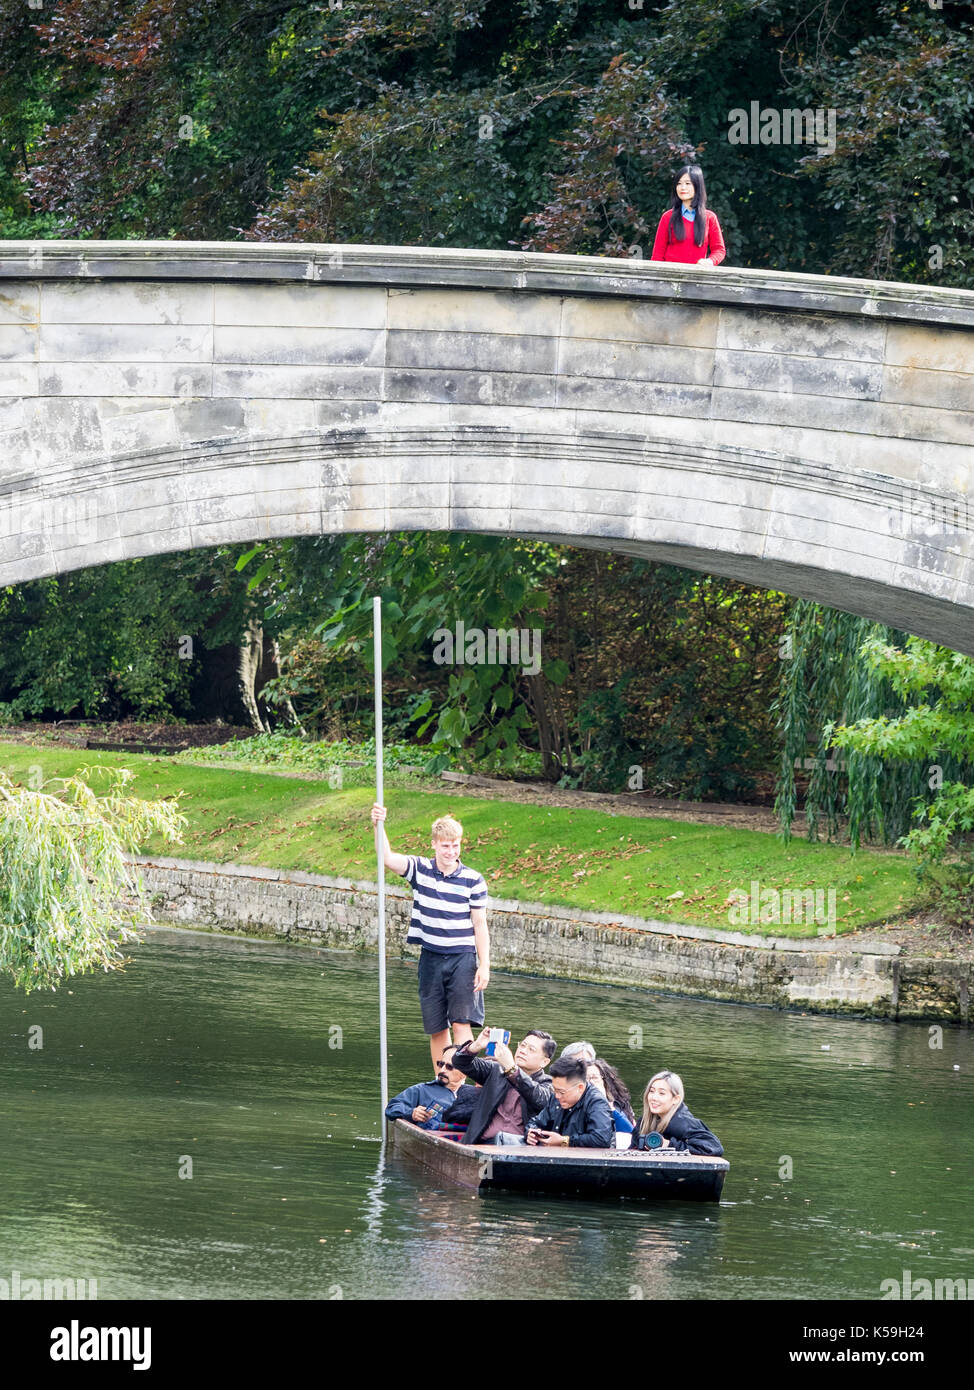 Cambridge - Los Turistas punt bajo un puente en el Kings College, Universidad de Cambridge. Foto de stock